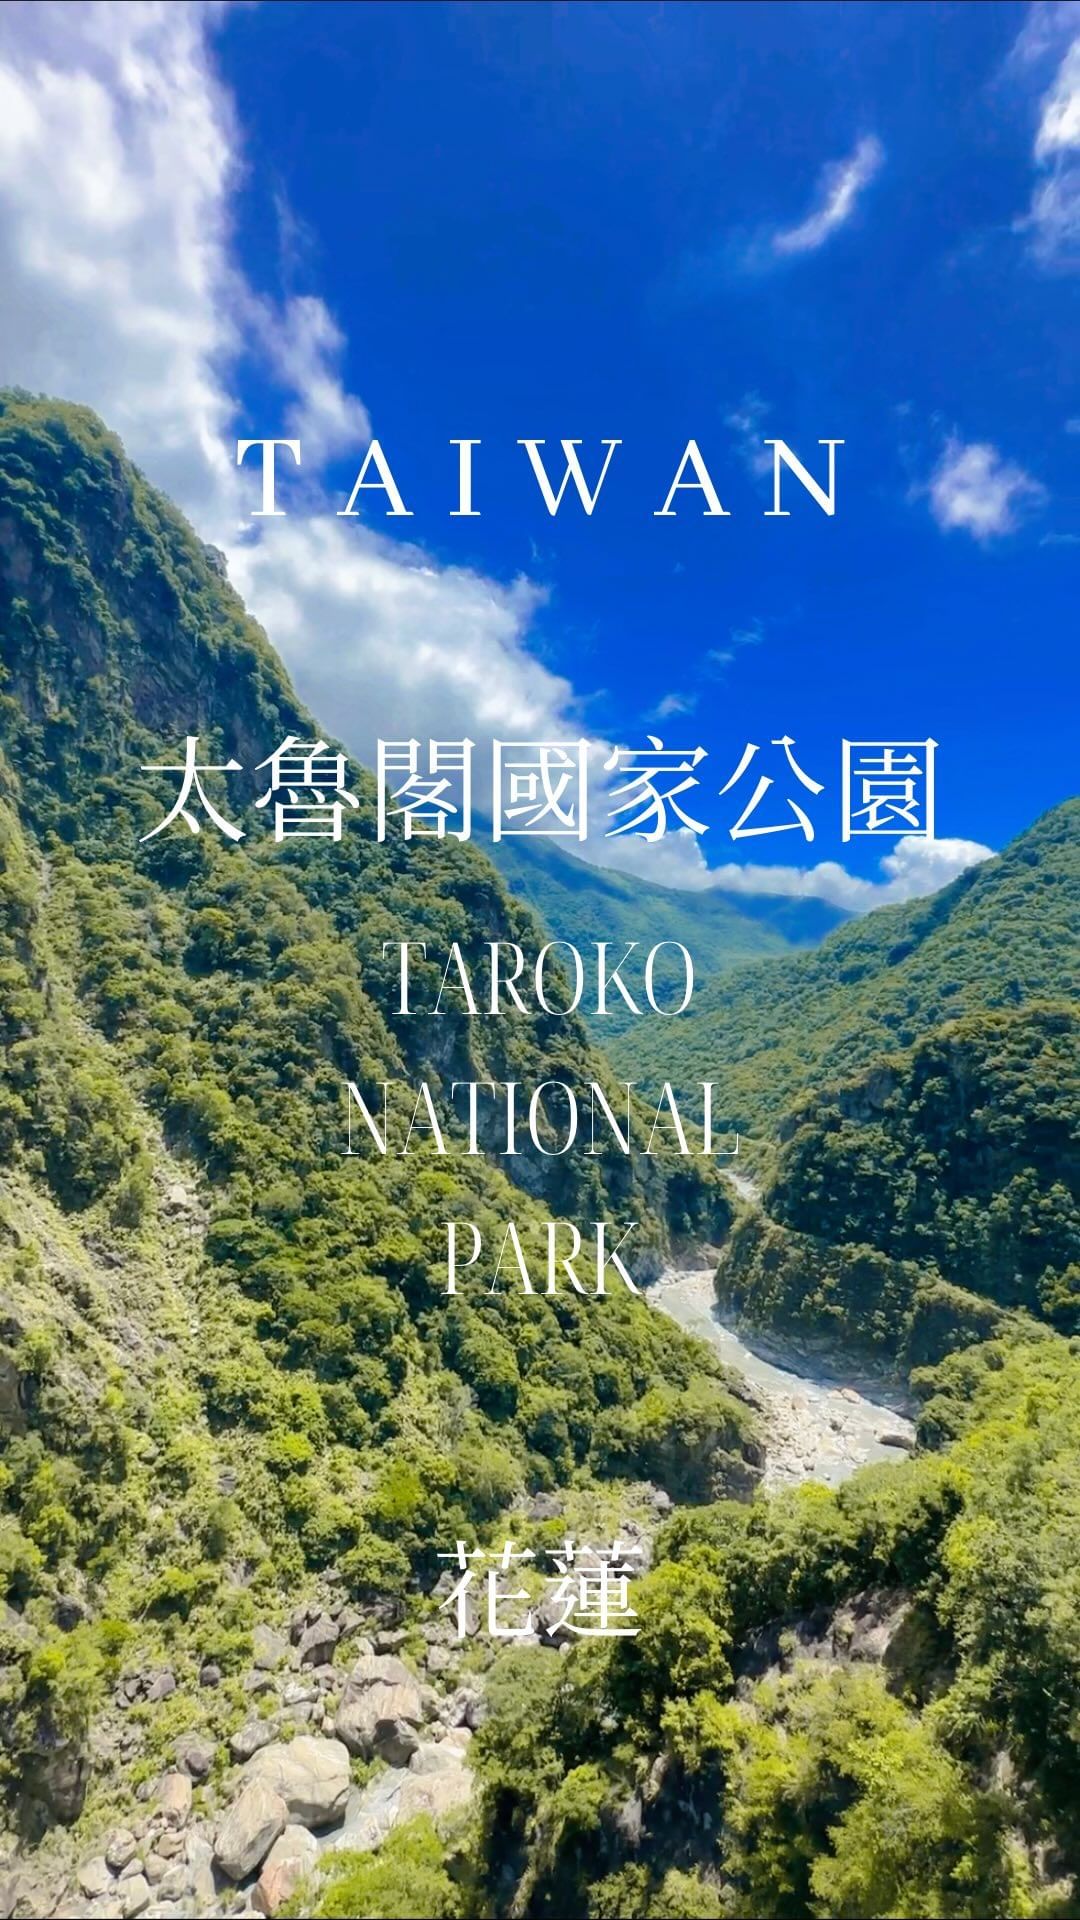 #太魯閣 #太魯閣國家公園 #taroko #花蓮 #Hualien #nationalpark #mountain #lands...